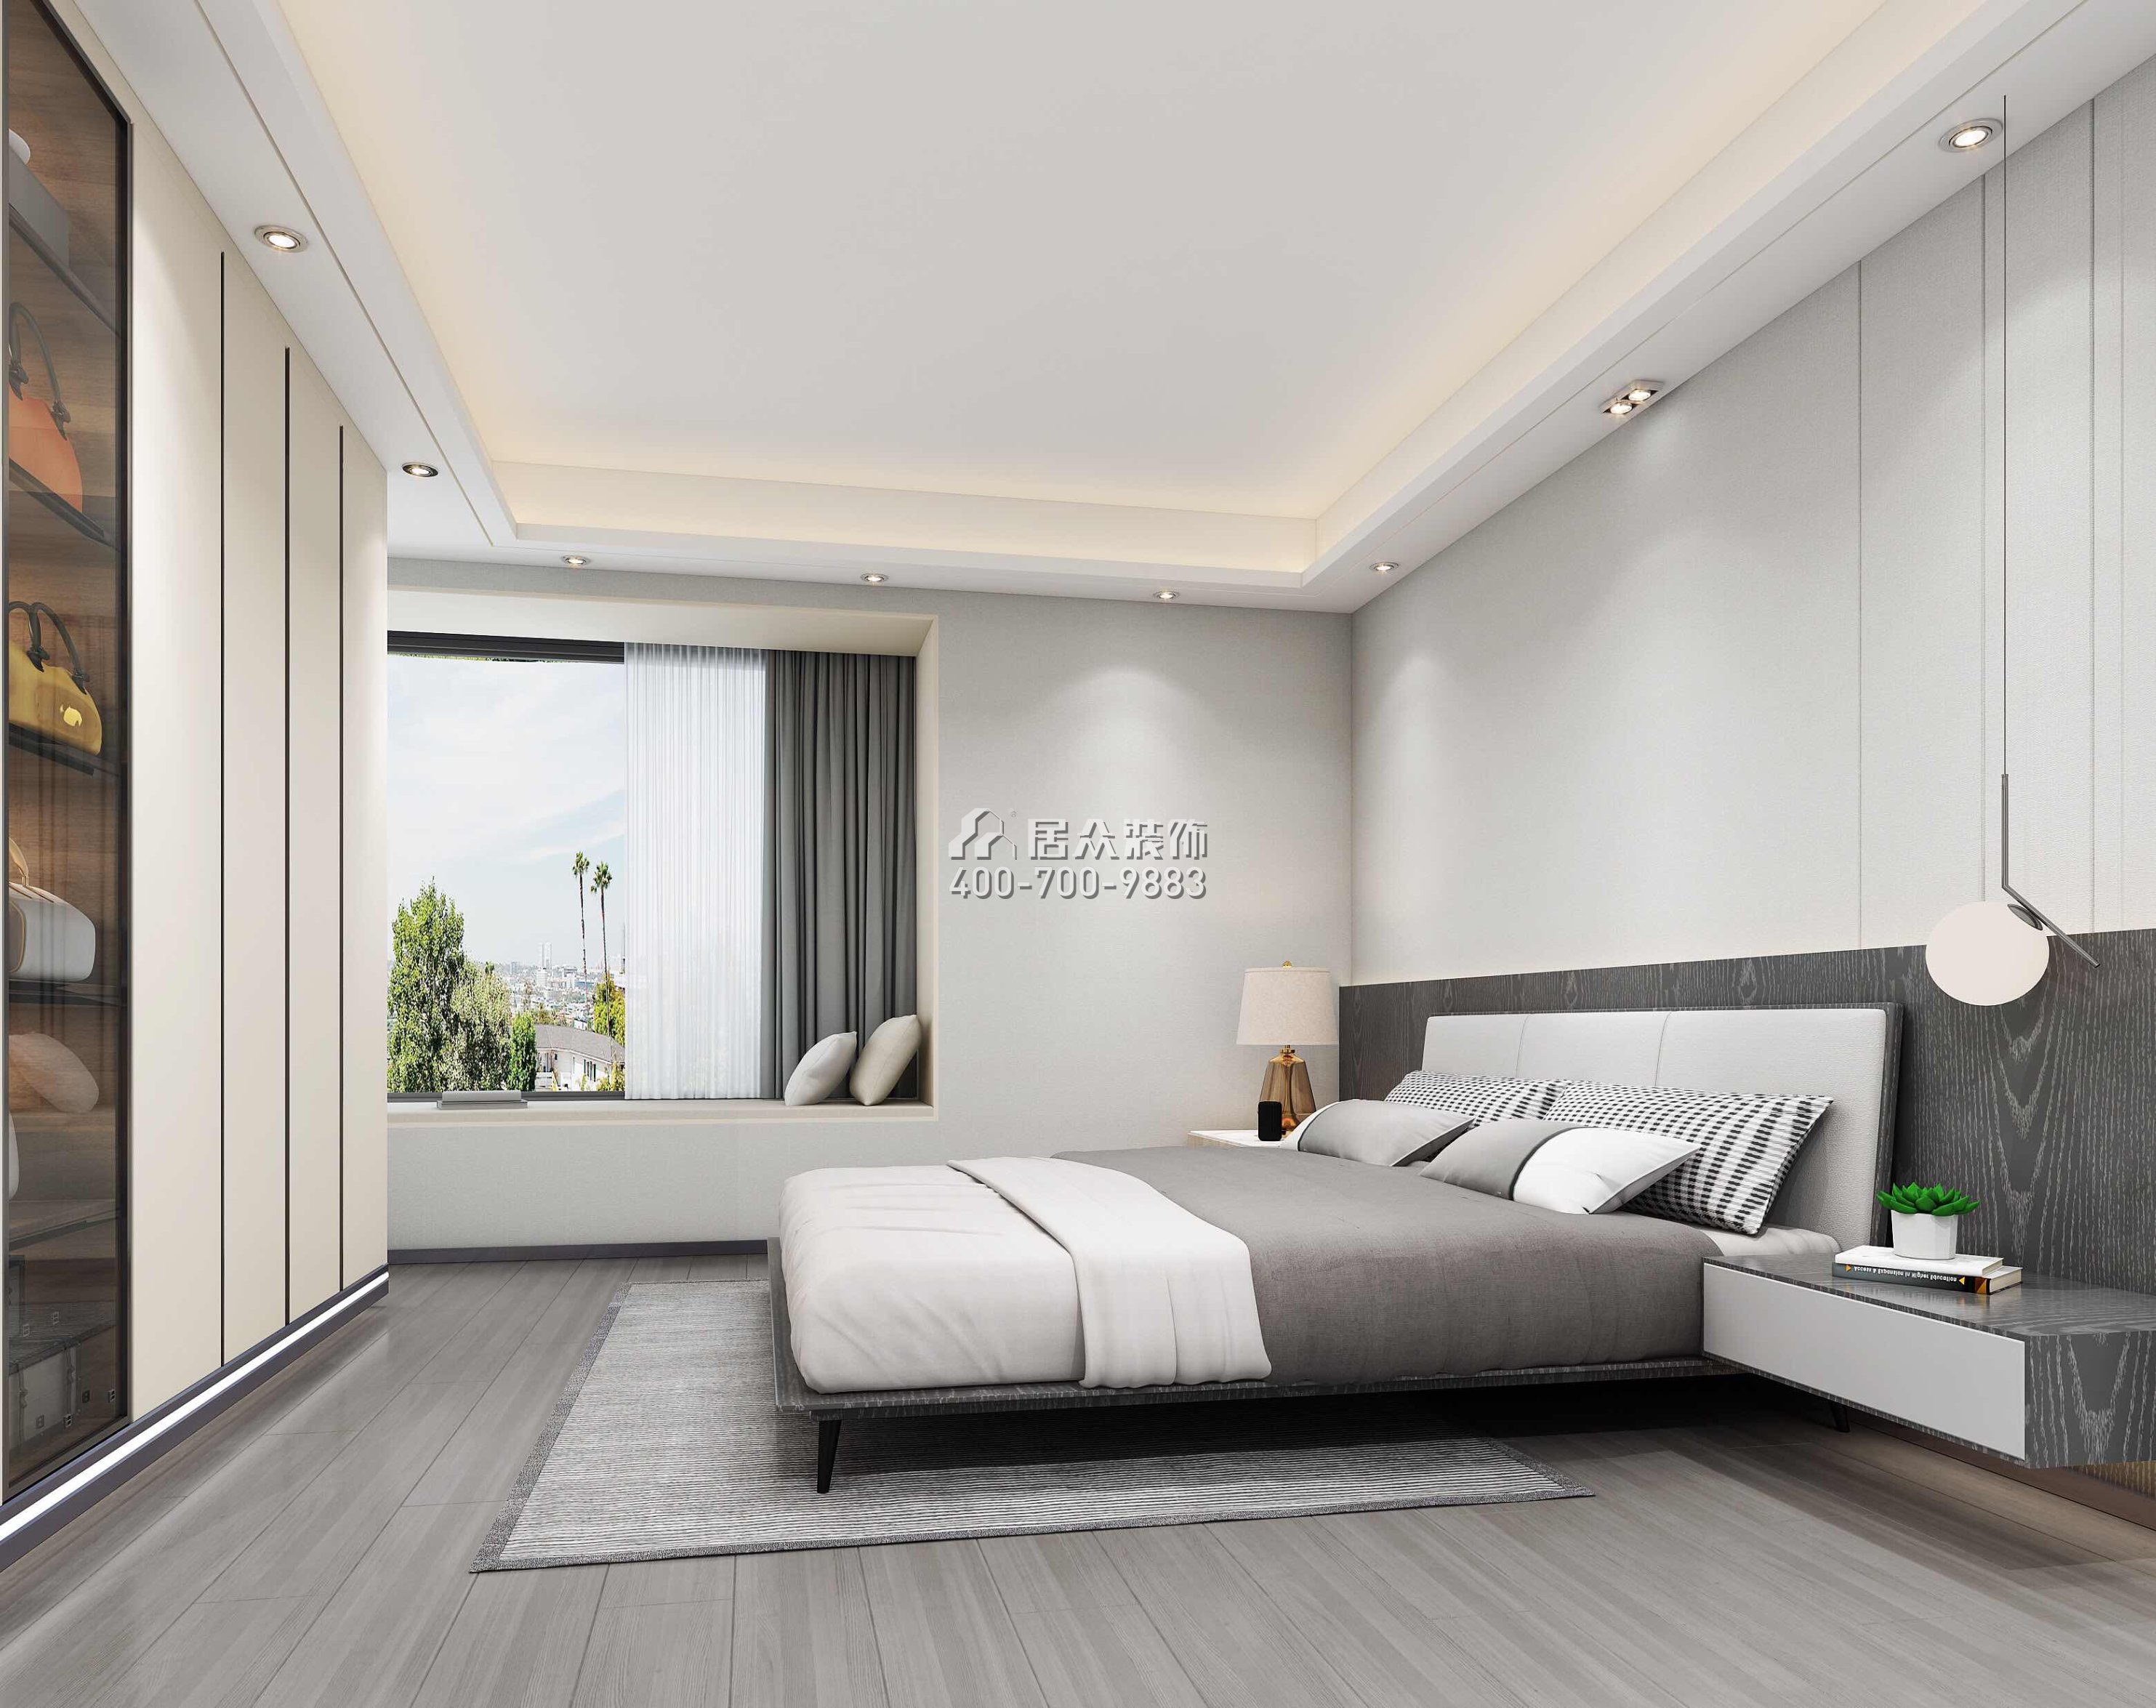 達鑫江濱新城250平方米現代簡約風格平層戶型臥室裝修效果圖